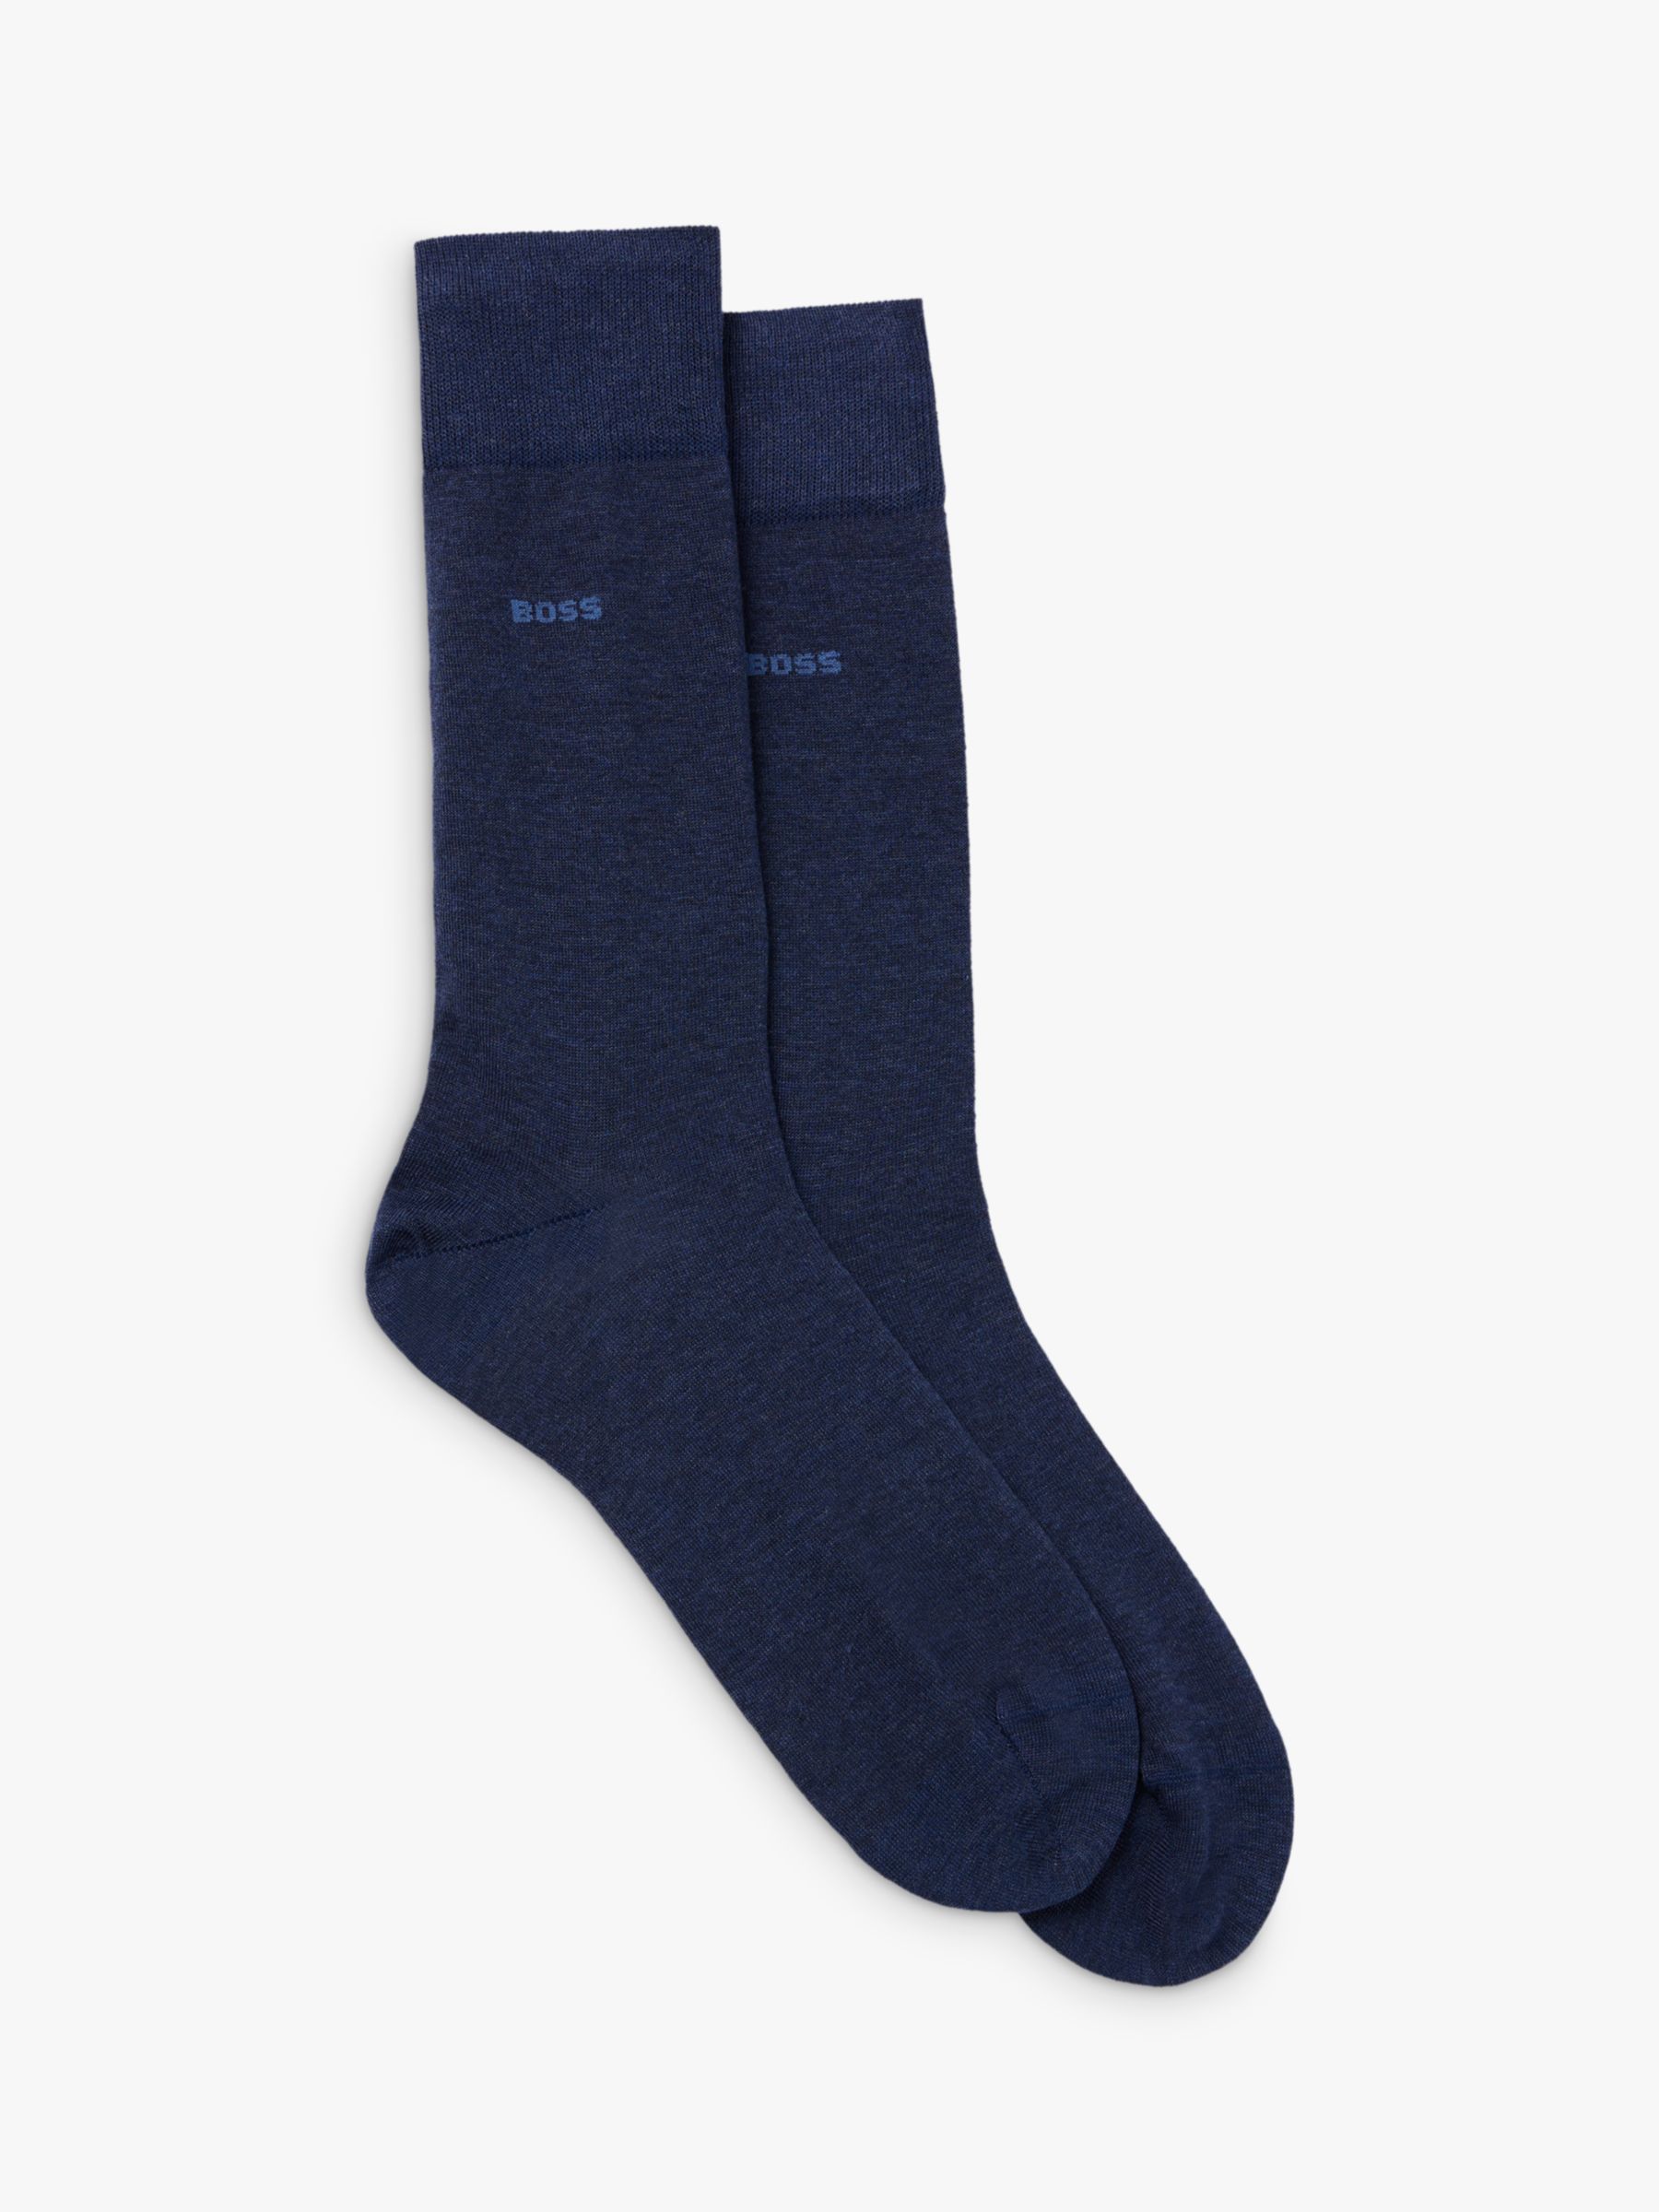 BOSS Tom Regular Socks, Pack of 2, Open Blue at John Lewis & Partners